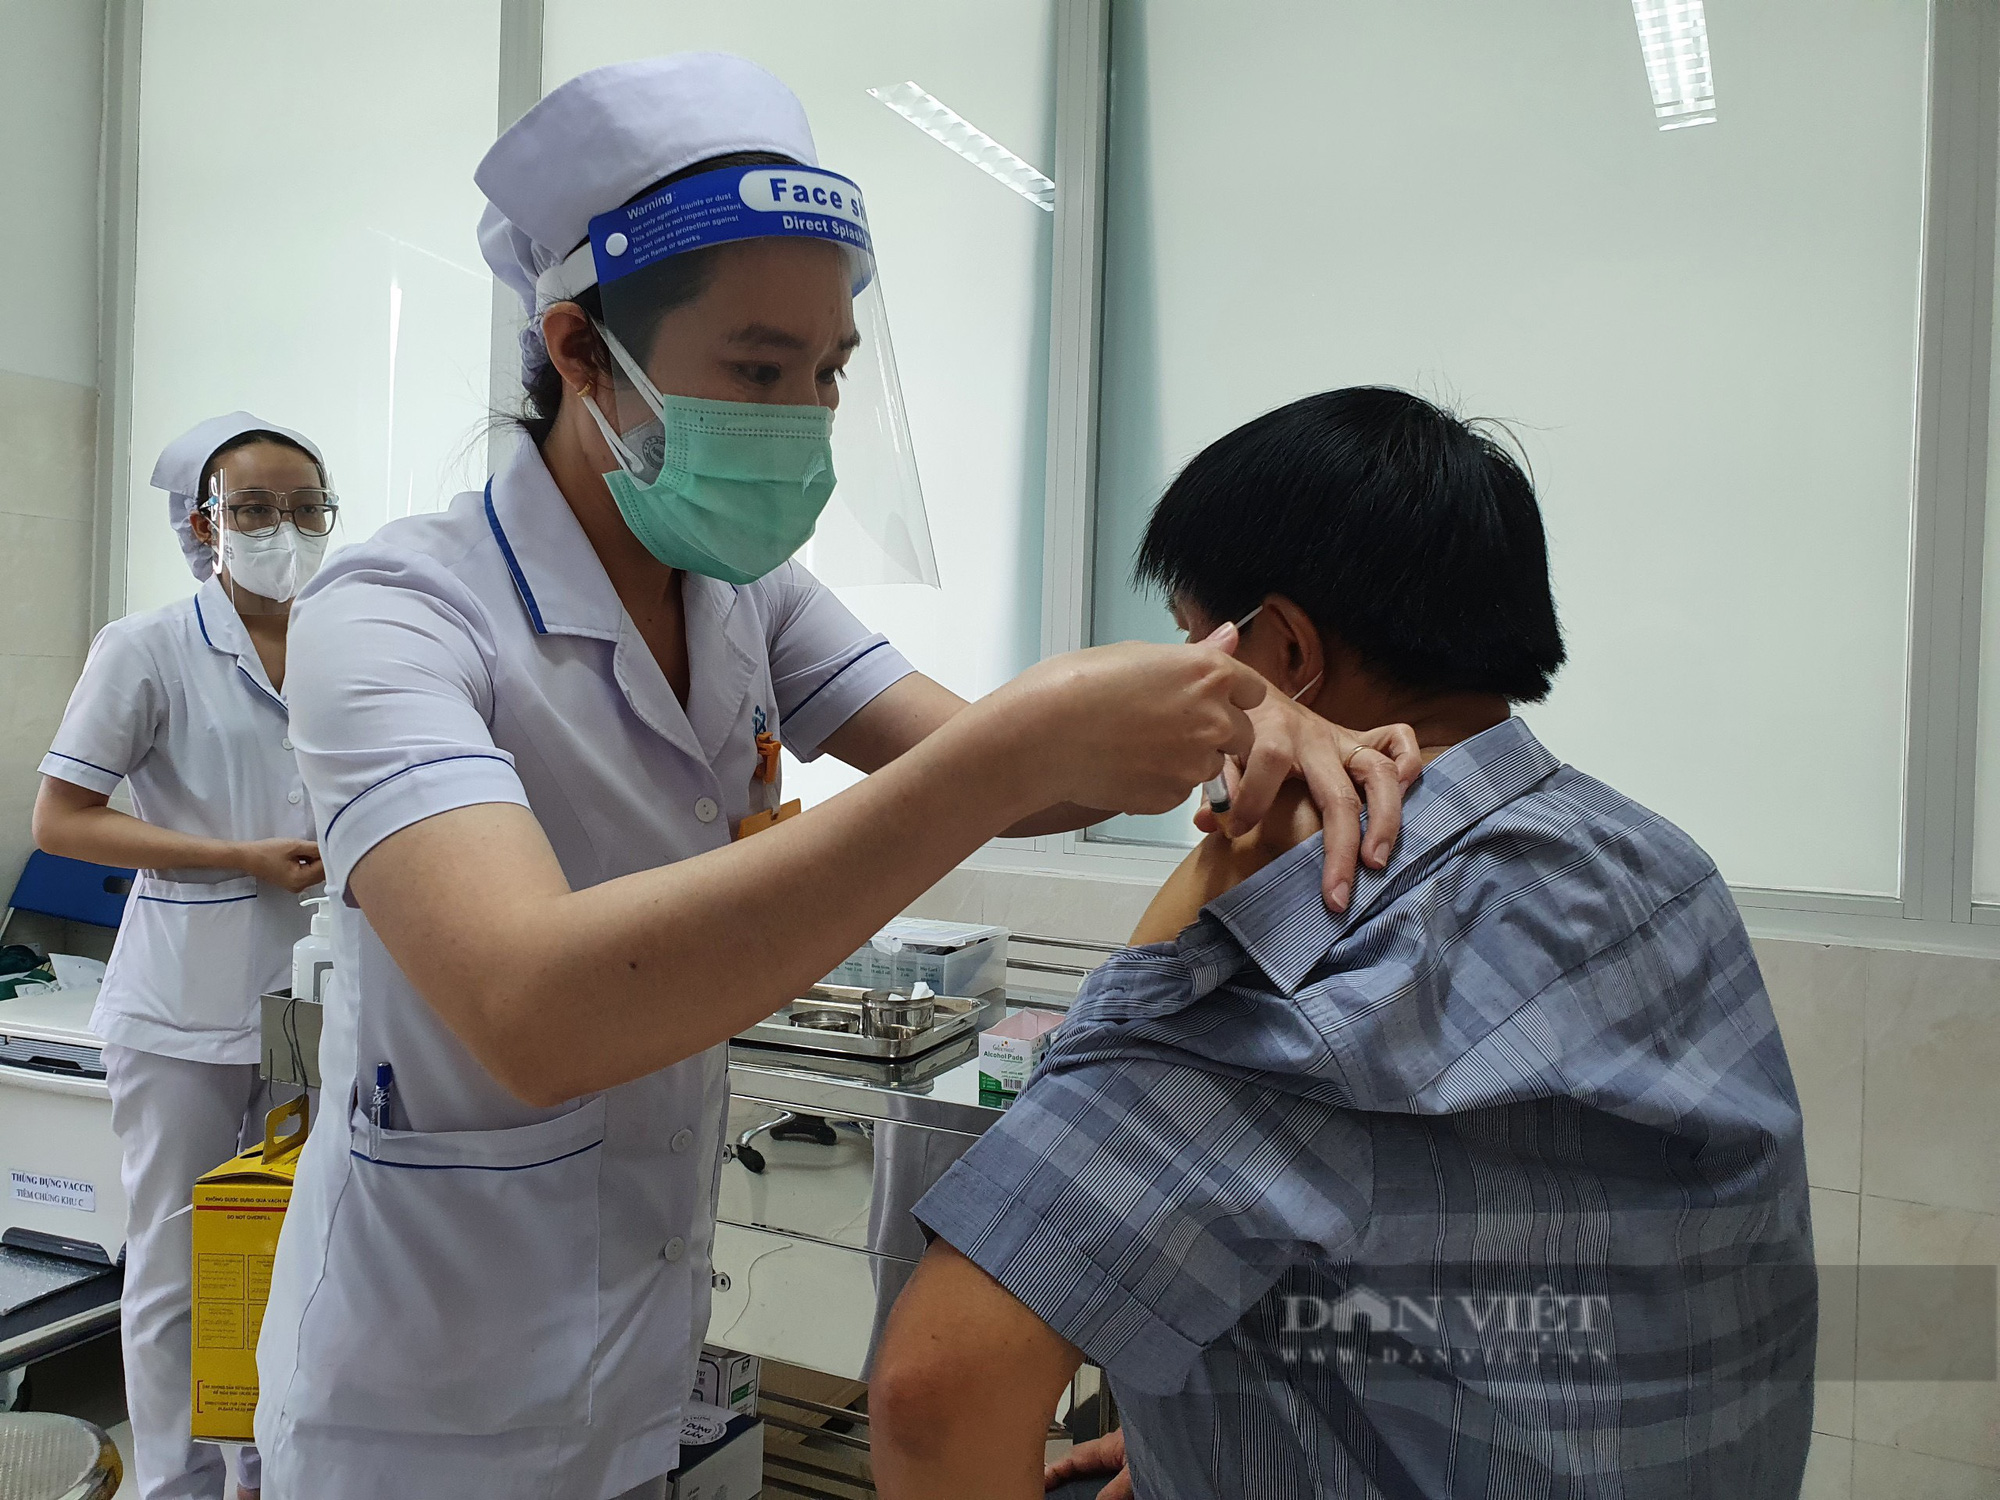 Đồng Nai 70% doanh nghiệp đăng ký 3 tại chỗ, phân bổ trên 140.000 liều vaccine để tiêm chủng cho công nhân - Ảnh 3.